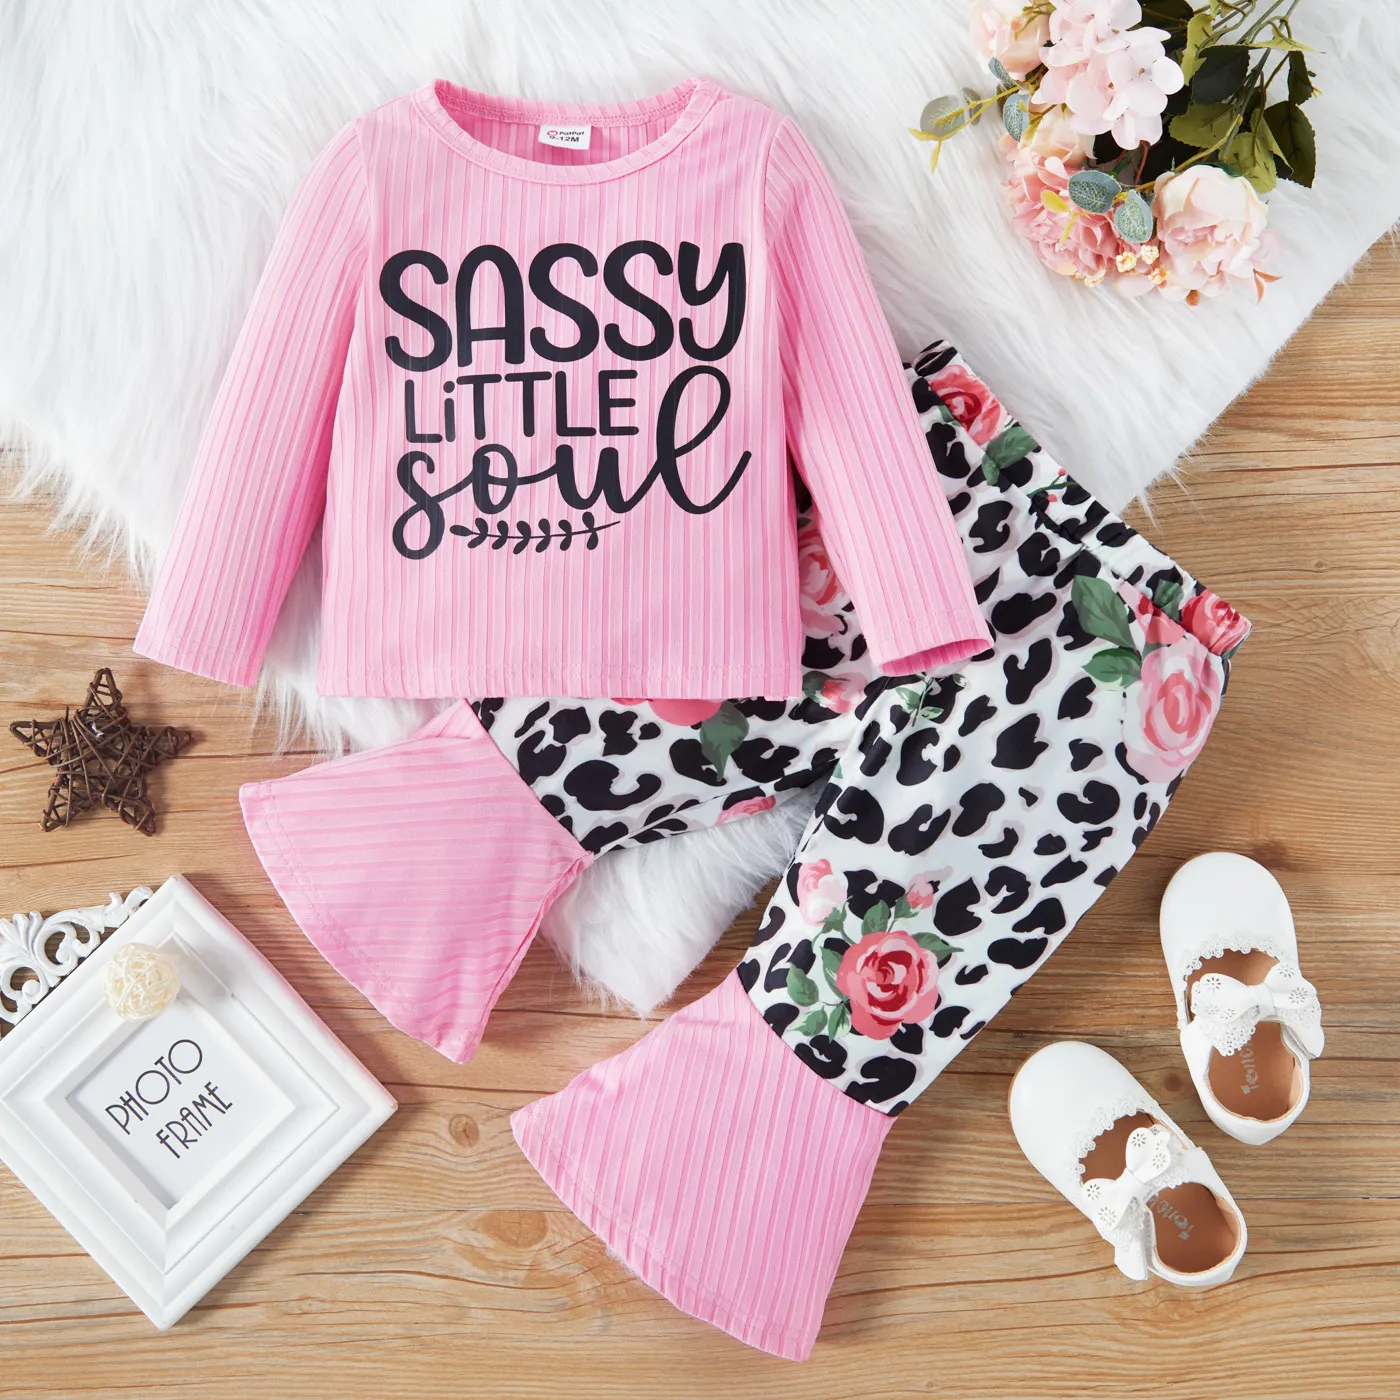 2 件裝女嬰字母印花粉色長袖羅紋上衣配豹紋和花卉印花喇叭褲套裝